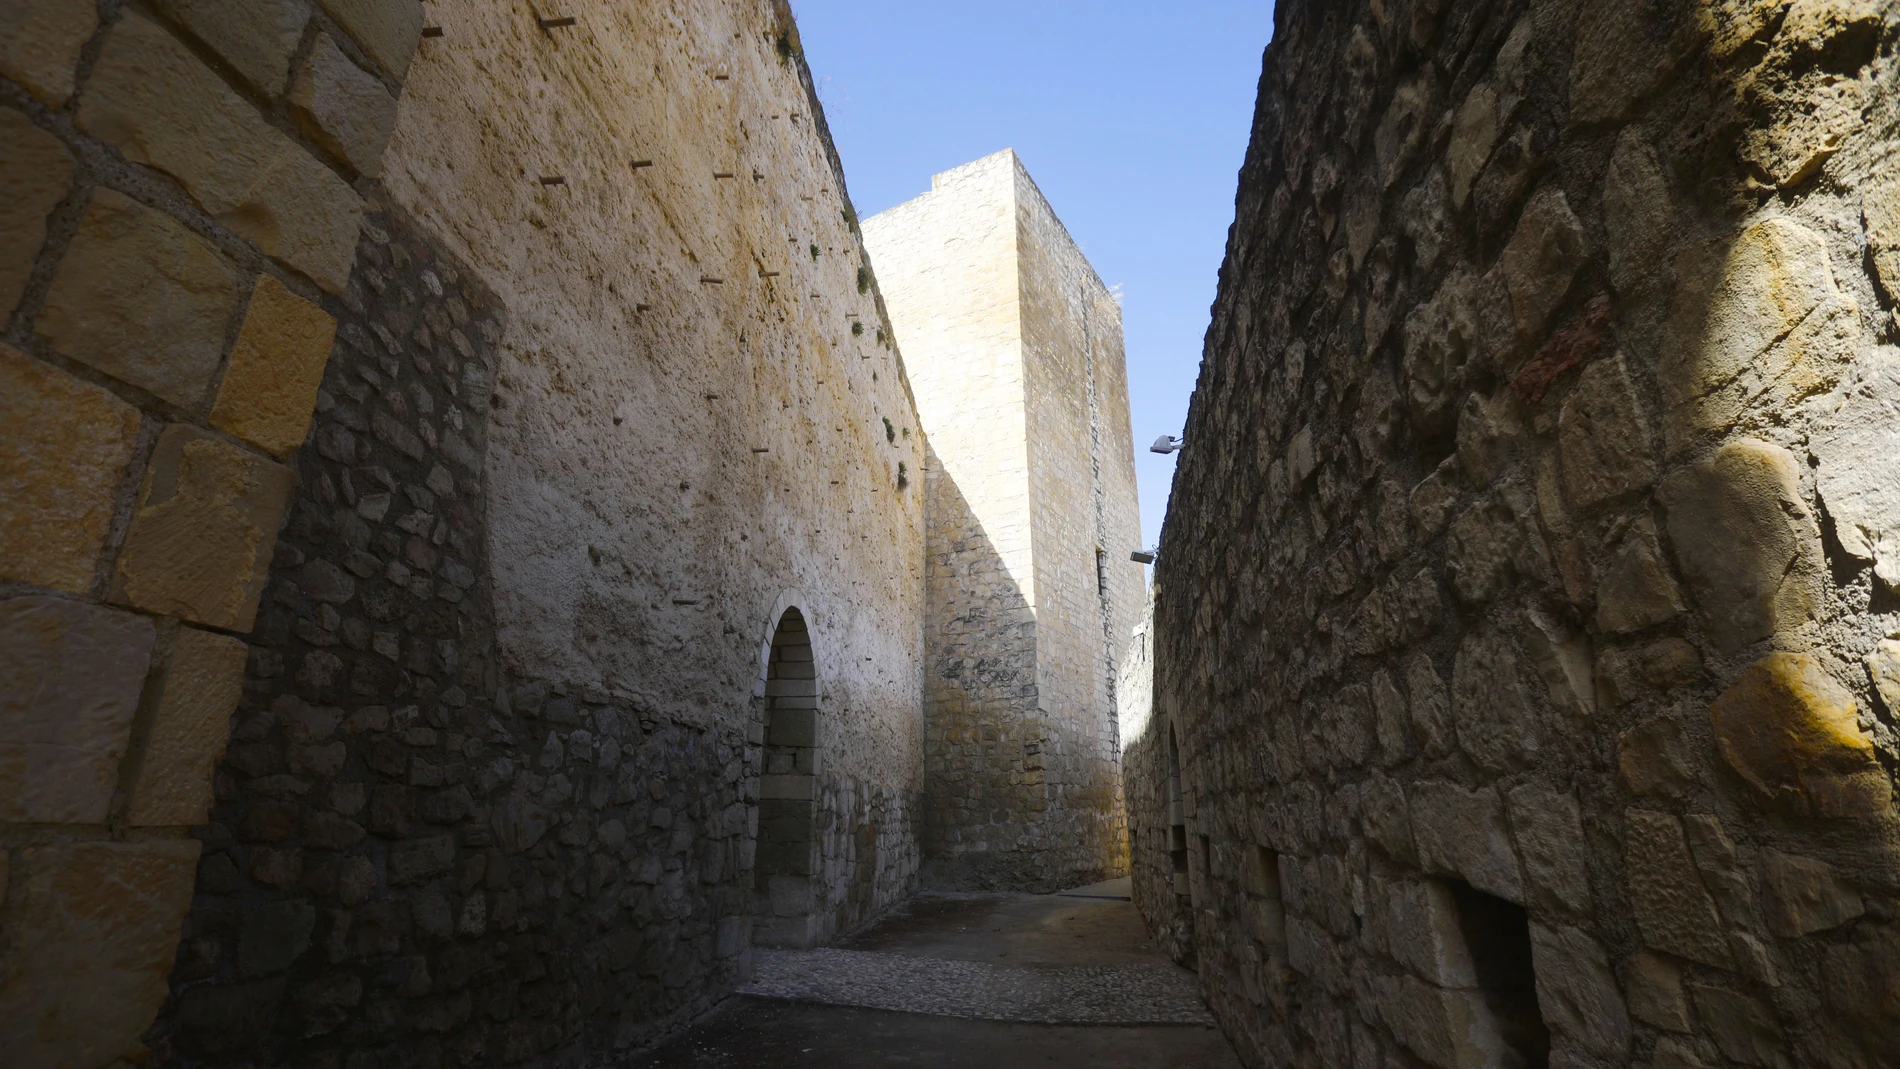 Vista de un patio interior del Castillo del Moral, erigido en 1148 y cárcel del emir nazarí Boabdil, en la localidad cordobesa de Lucena. EFE/Salas